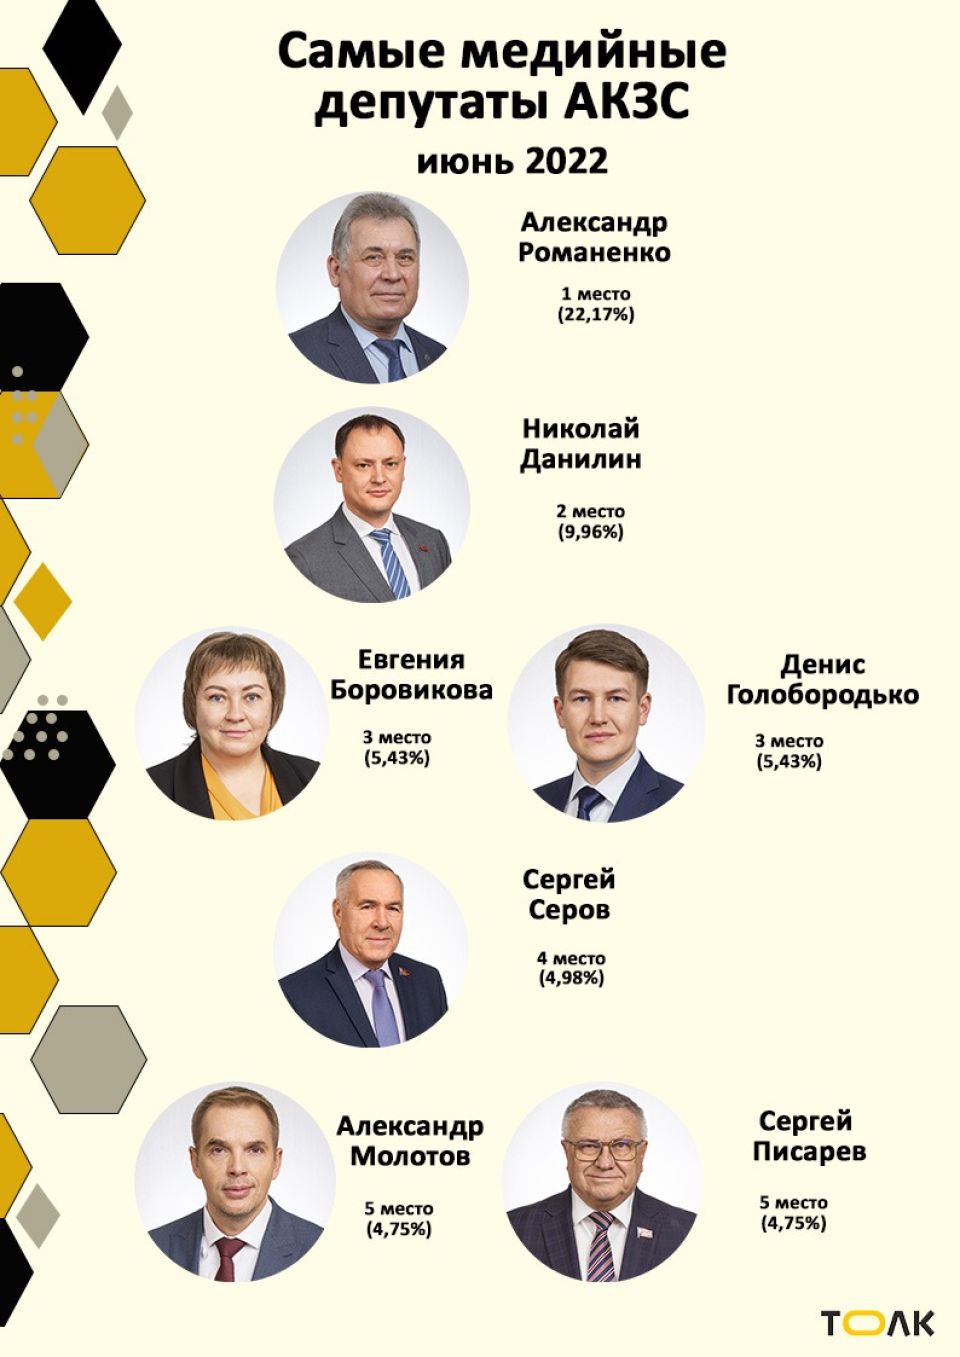 Рейтинг медийности депутатов АКЗС в июне 2022 года